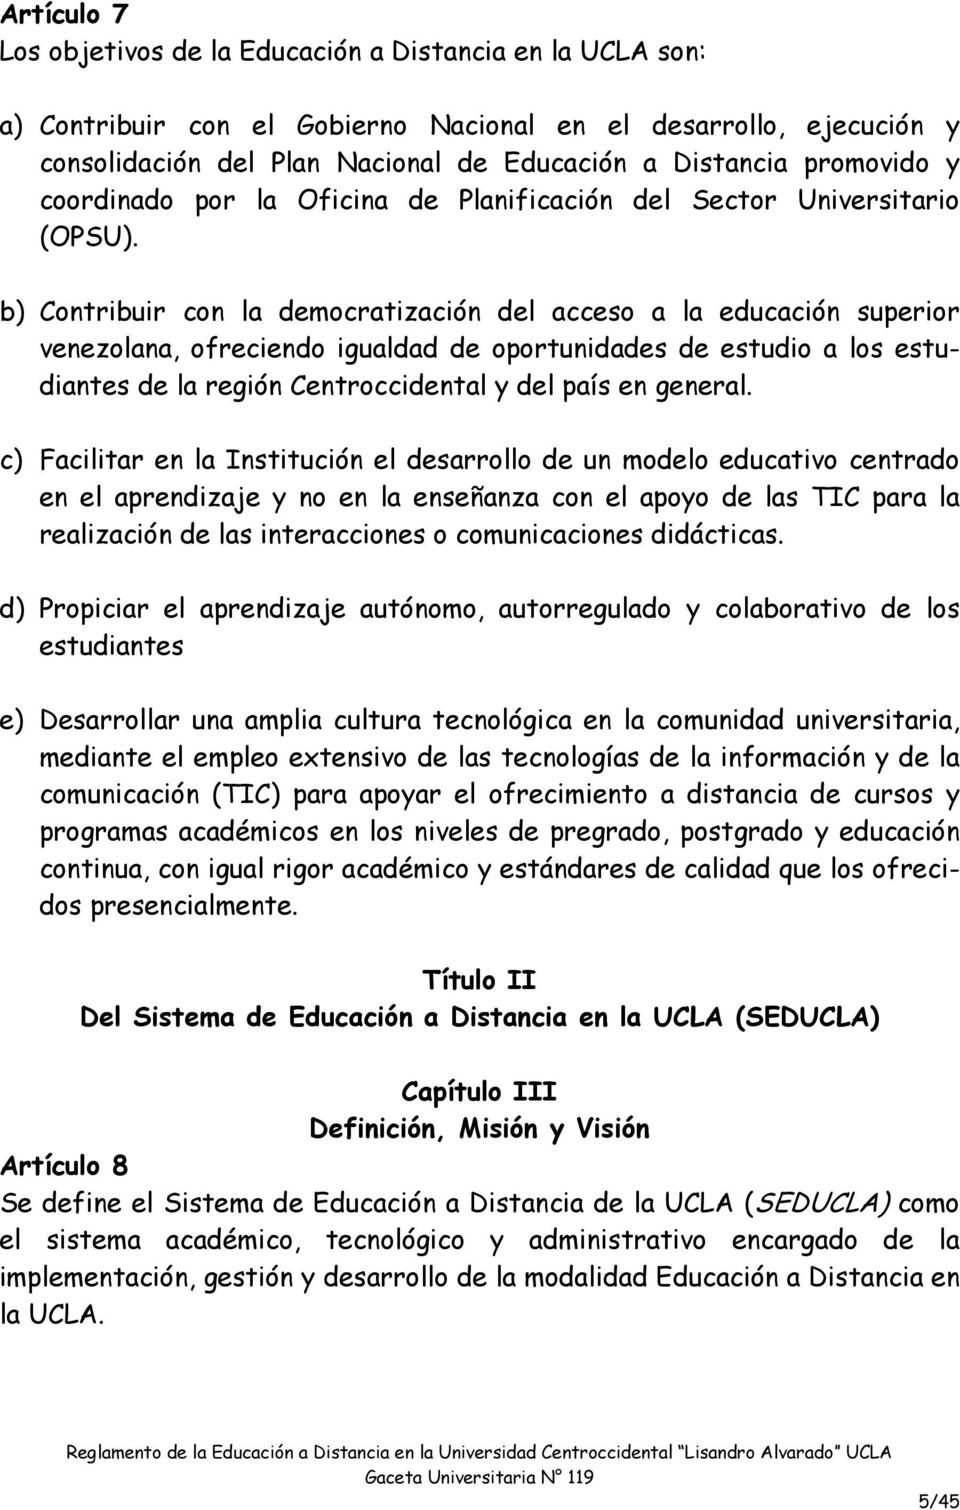 b) Contribuir con la democratización del acceso a la educación superior venezolana, ofreciendo igualdad de oportunidades de estudio a los estudiantes de la región Centroccidental y del país en